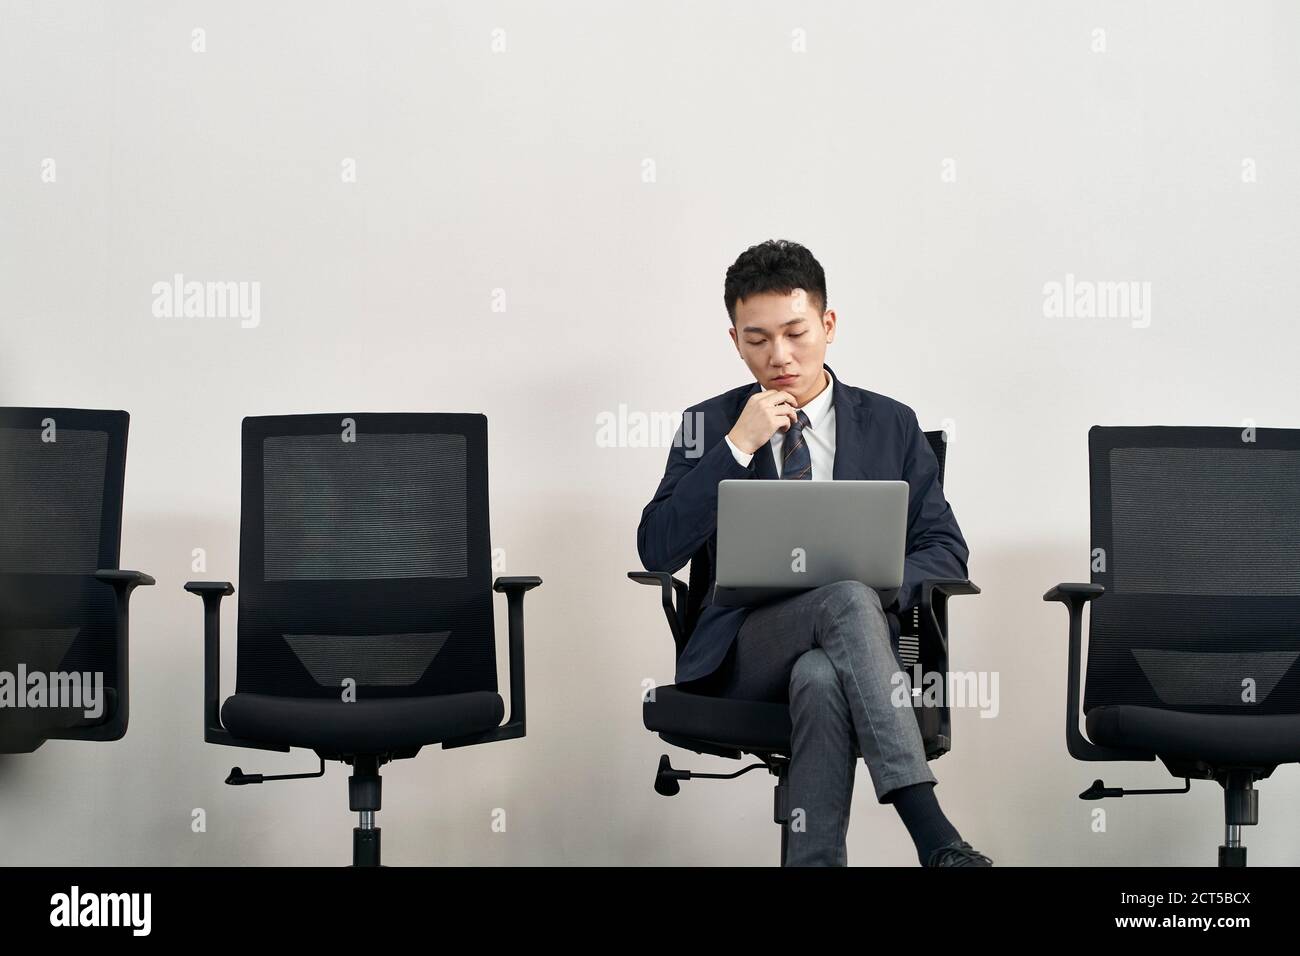 joven aplicante asiático sentado en la silla preparándose para la entrevista usando un ordenador portátil mientras espera en línea Foto de stock